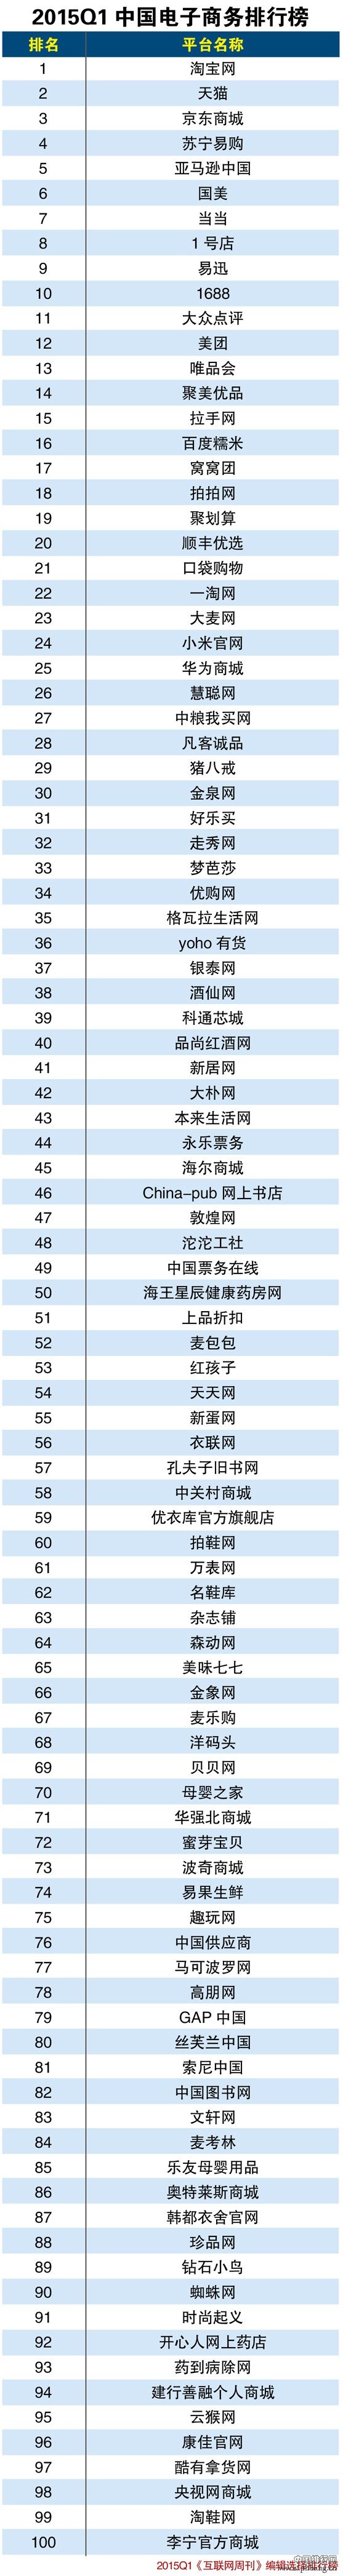 2015年一季度中国电子商务企业排行榜TOP100